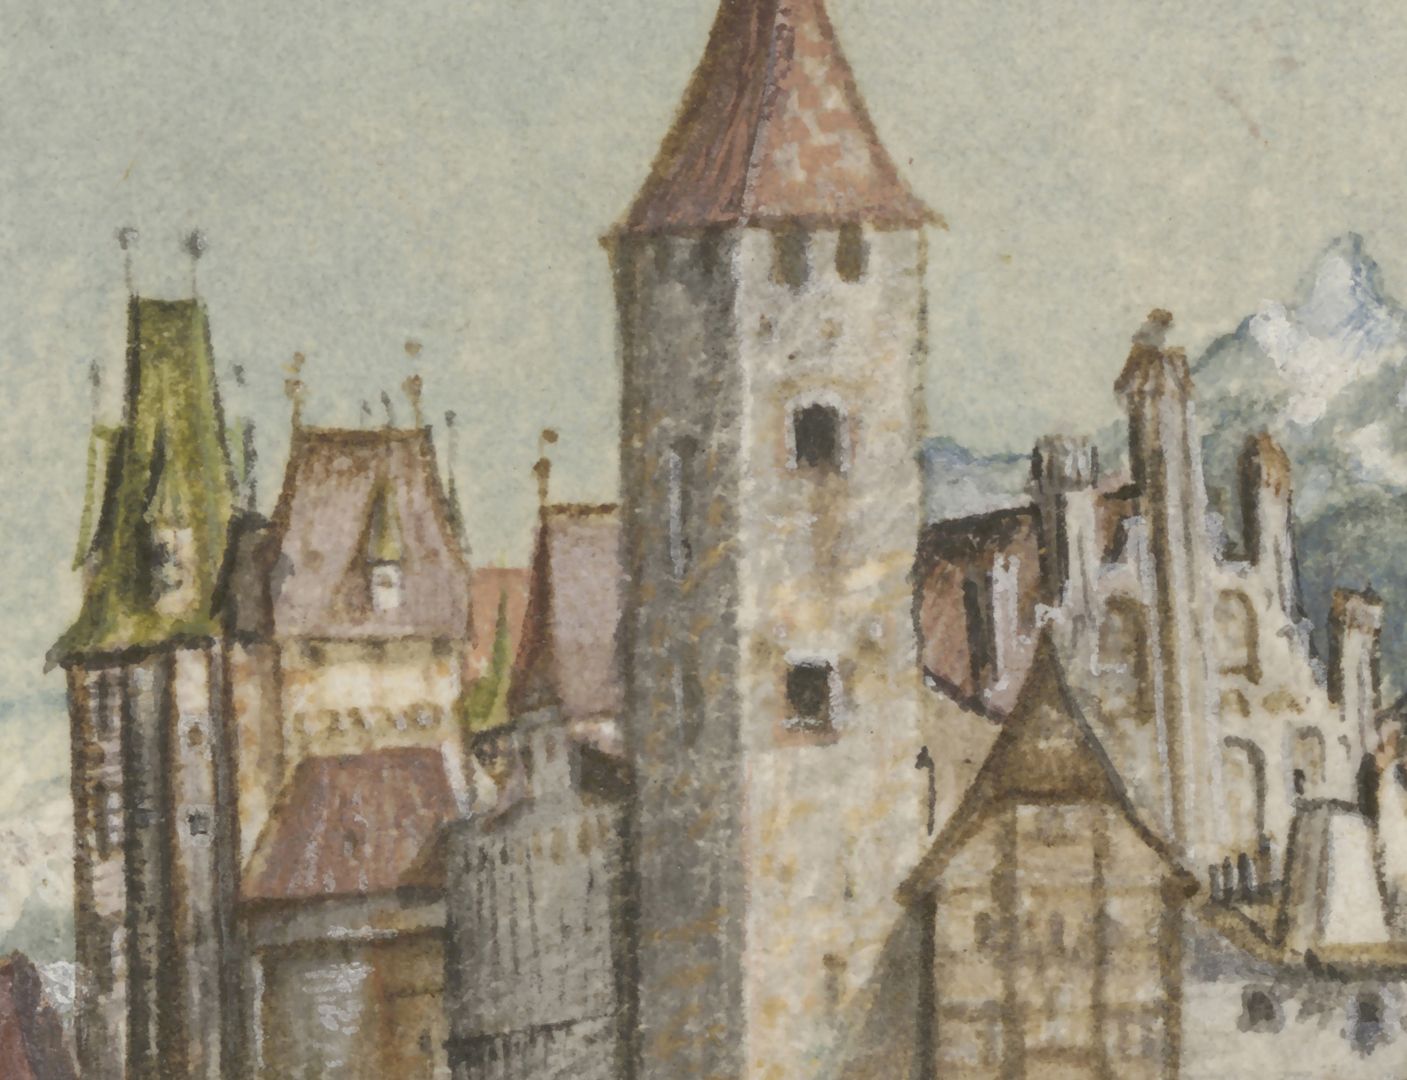 Innsbruck Detailansicht, von links nach rechts: Eckturm der Hofburg, Frauenzimmerbau, Turm der Hofburg bei der Pfarrkirche St. Jakob, Kräuterturm (vorn), Westgiebel der Pfarrkirche St. Jakob